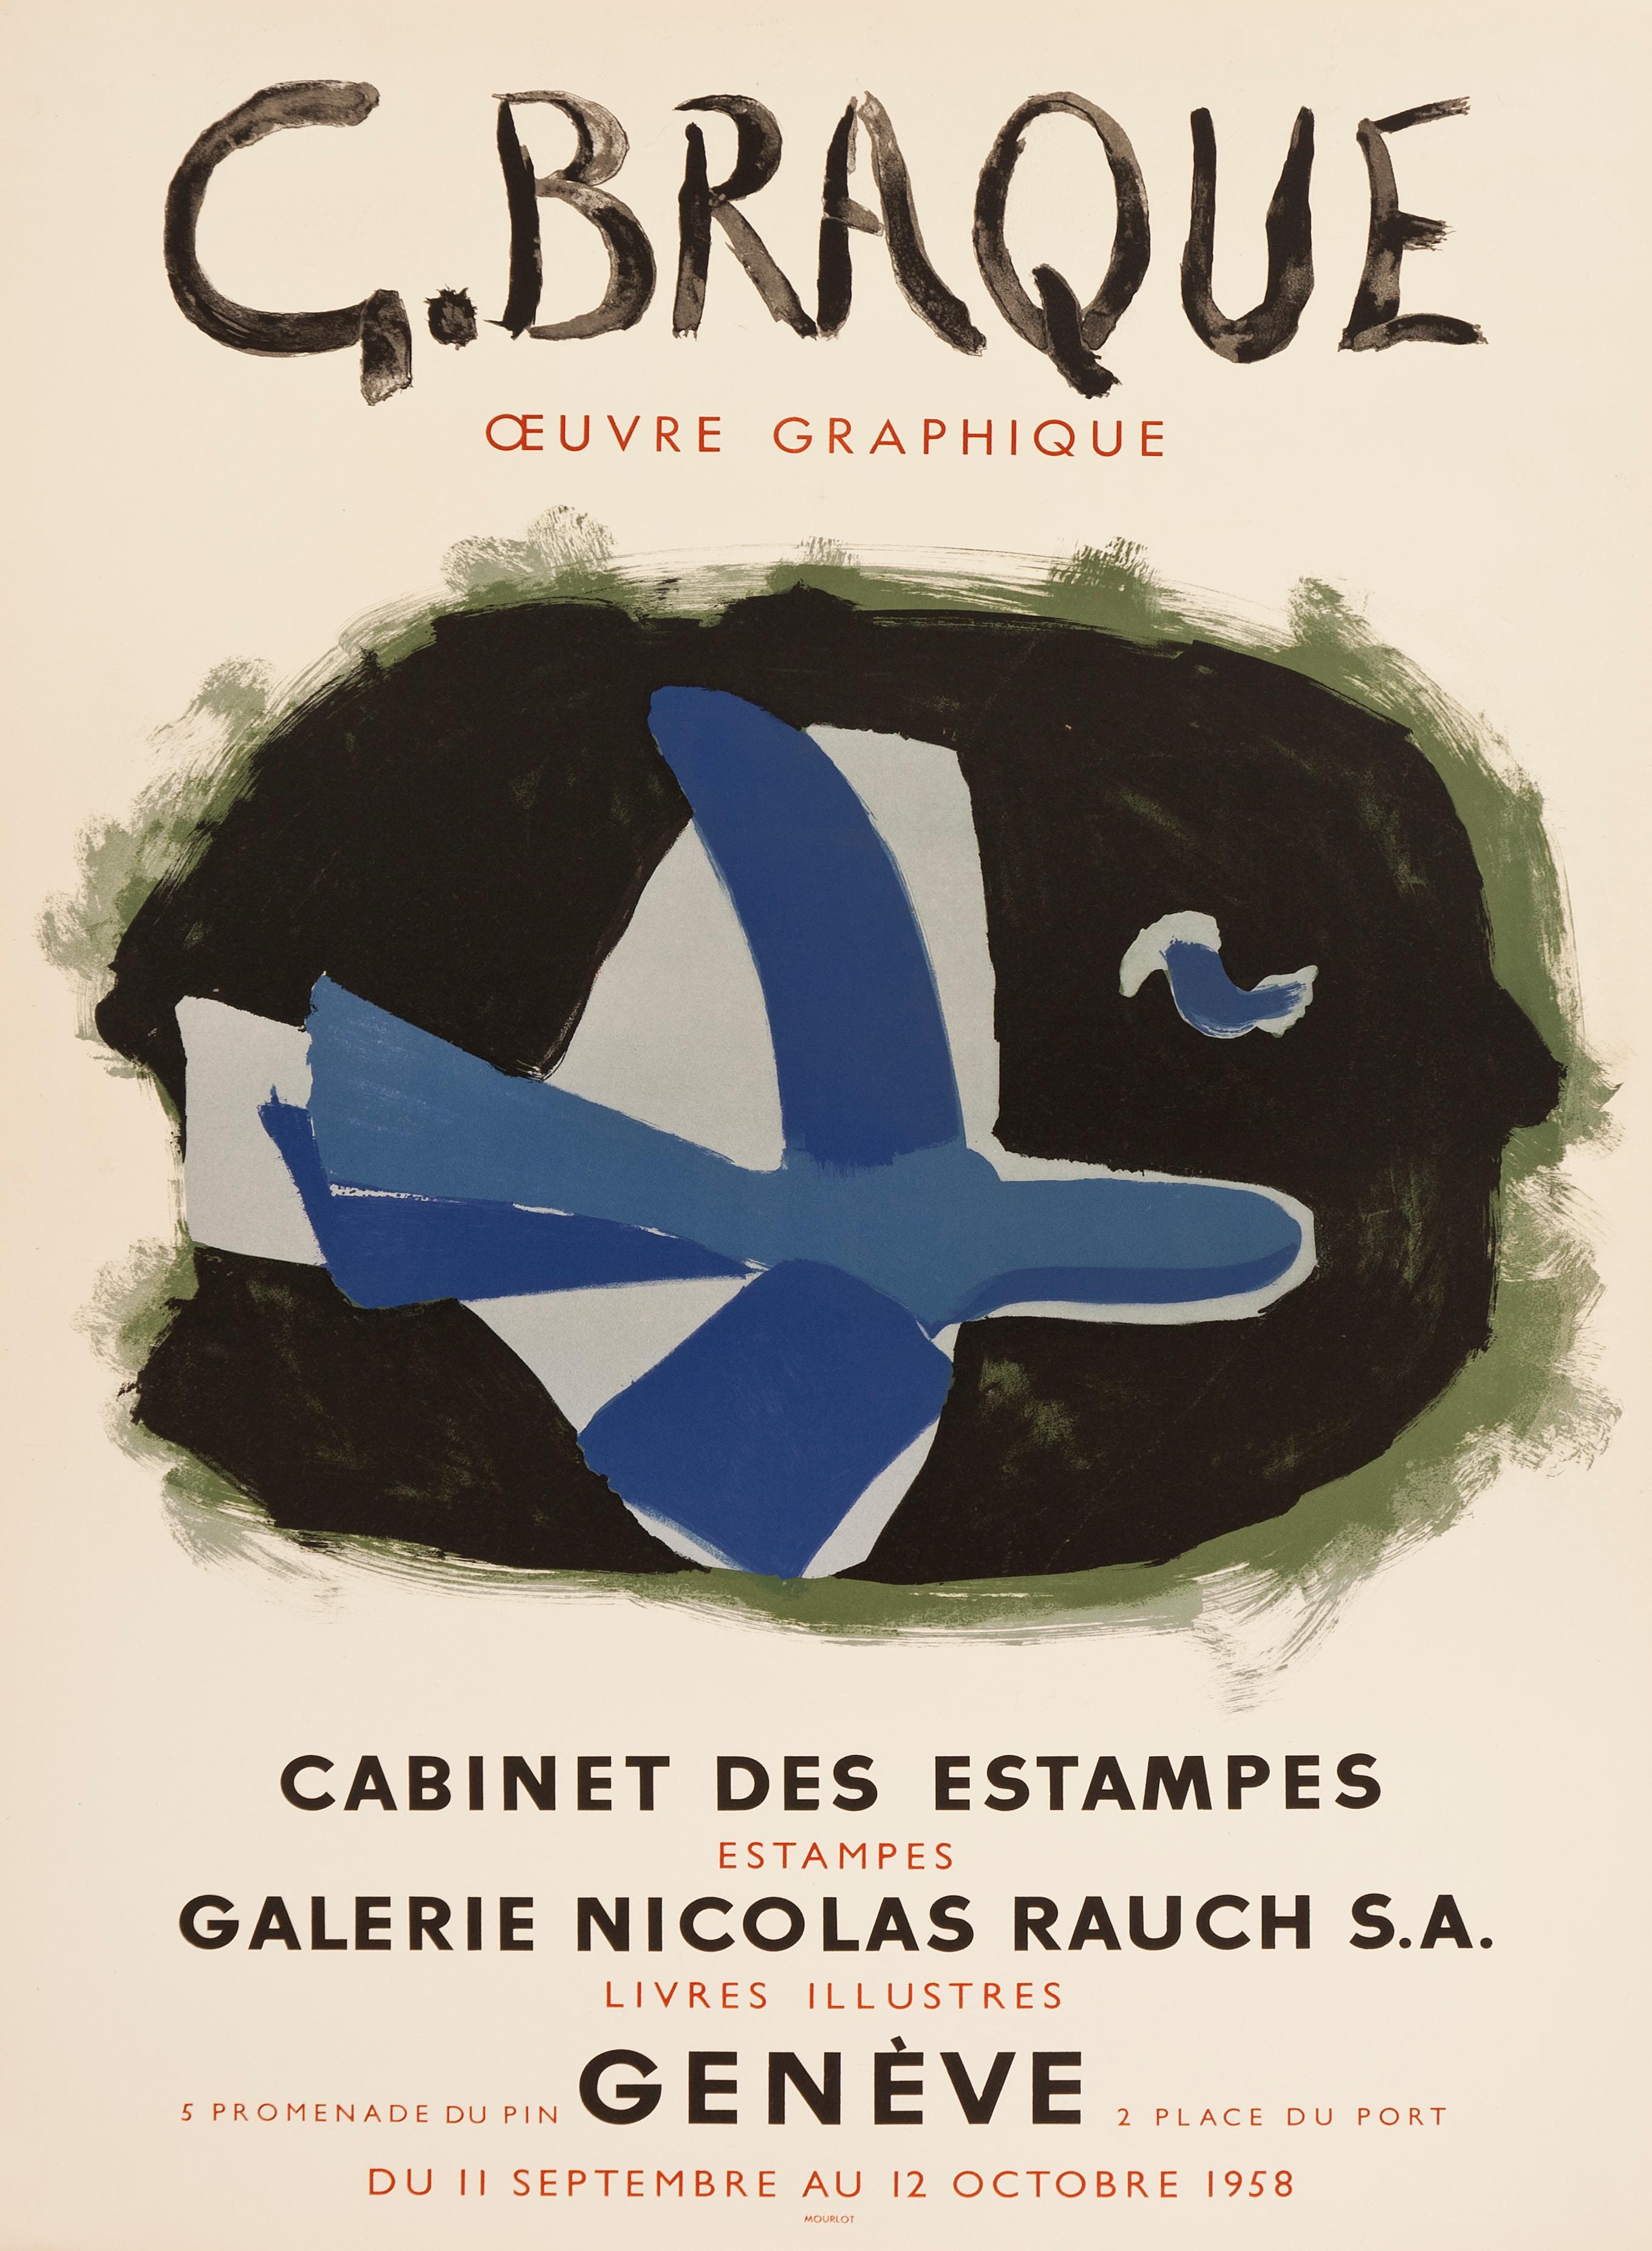 L'Oiseau des forêts - Galerie Nicolas Rauch d'après Georges Braque, 1958